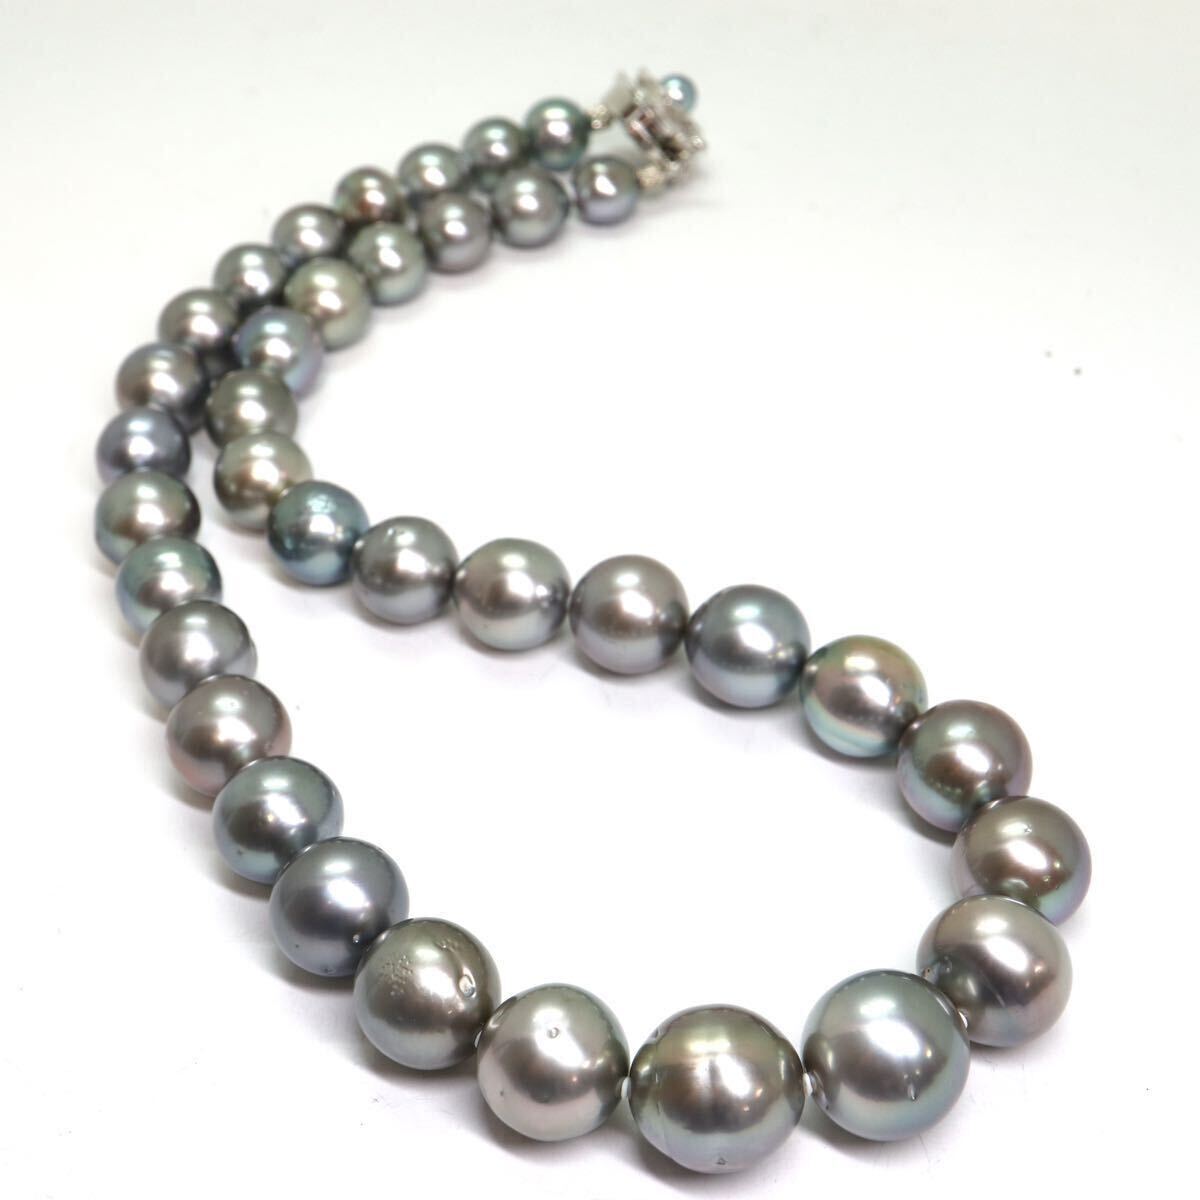 鑑別書付き!!《南洋黒蝶真珠ネックレス》A 約9.0-14.5mm珠 89.6g 約45cm pearl necklace ジュエリー jewelry EC0/EC0の画像7